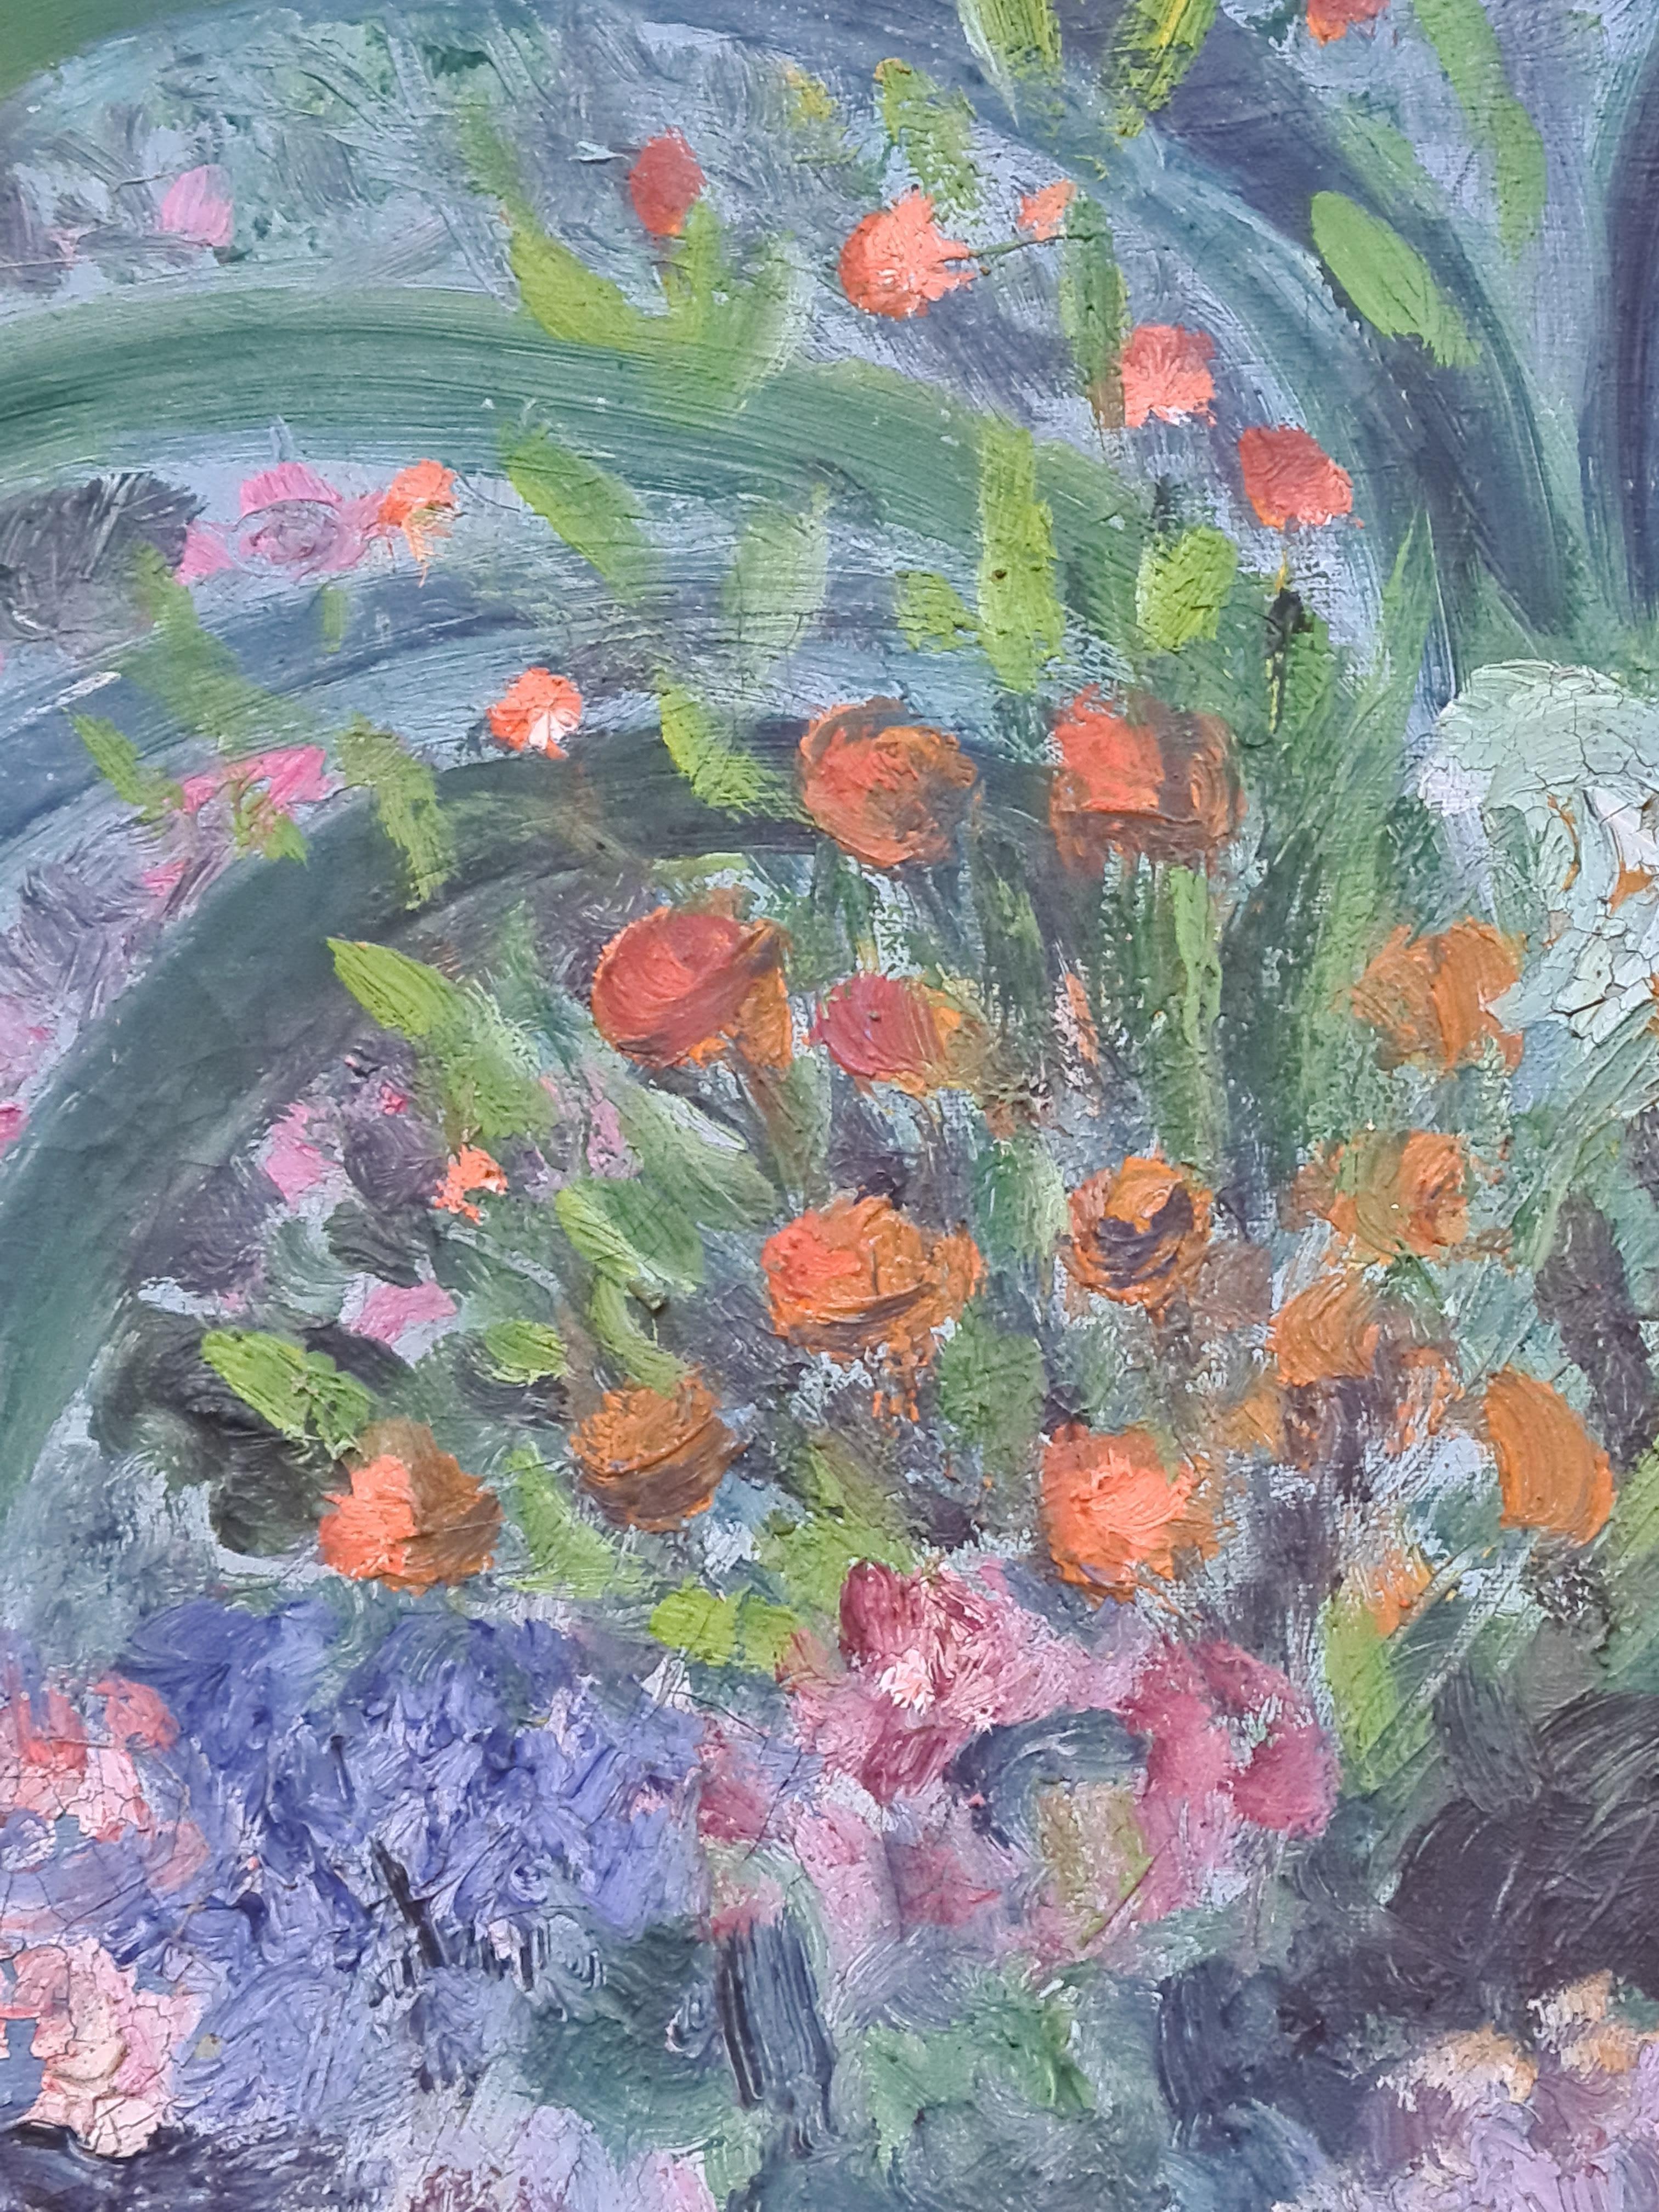 Huile sur toile impressionniste française, vue d'intérieur, plantes à une fenêtre par June Fortan. Le tableau est signé en bas à droite.

Vue intérieure colorée et exubérante d'une collection de plantes et de fleurs devant une grande fenêtre. Fortan